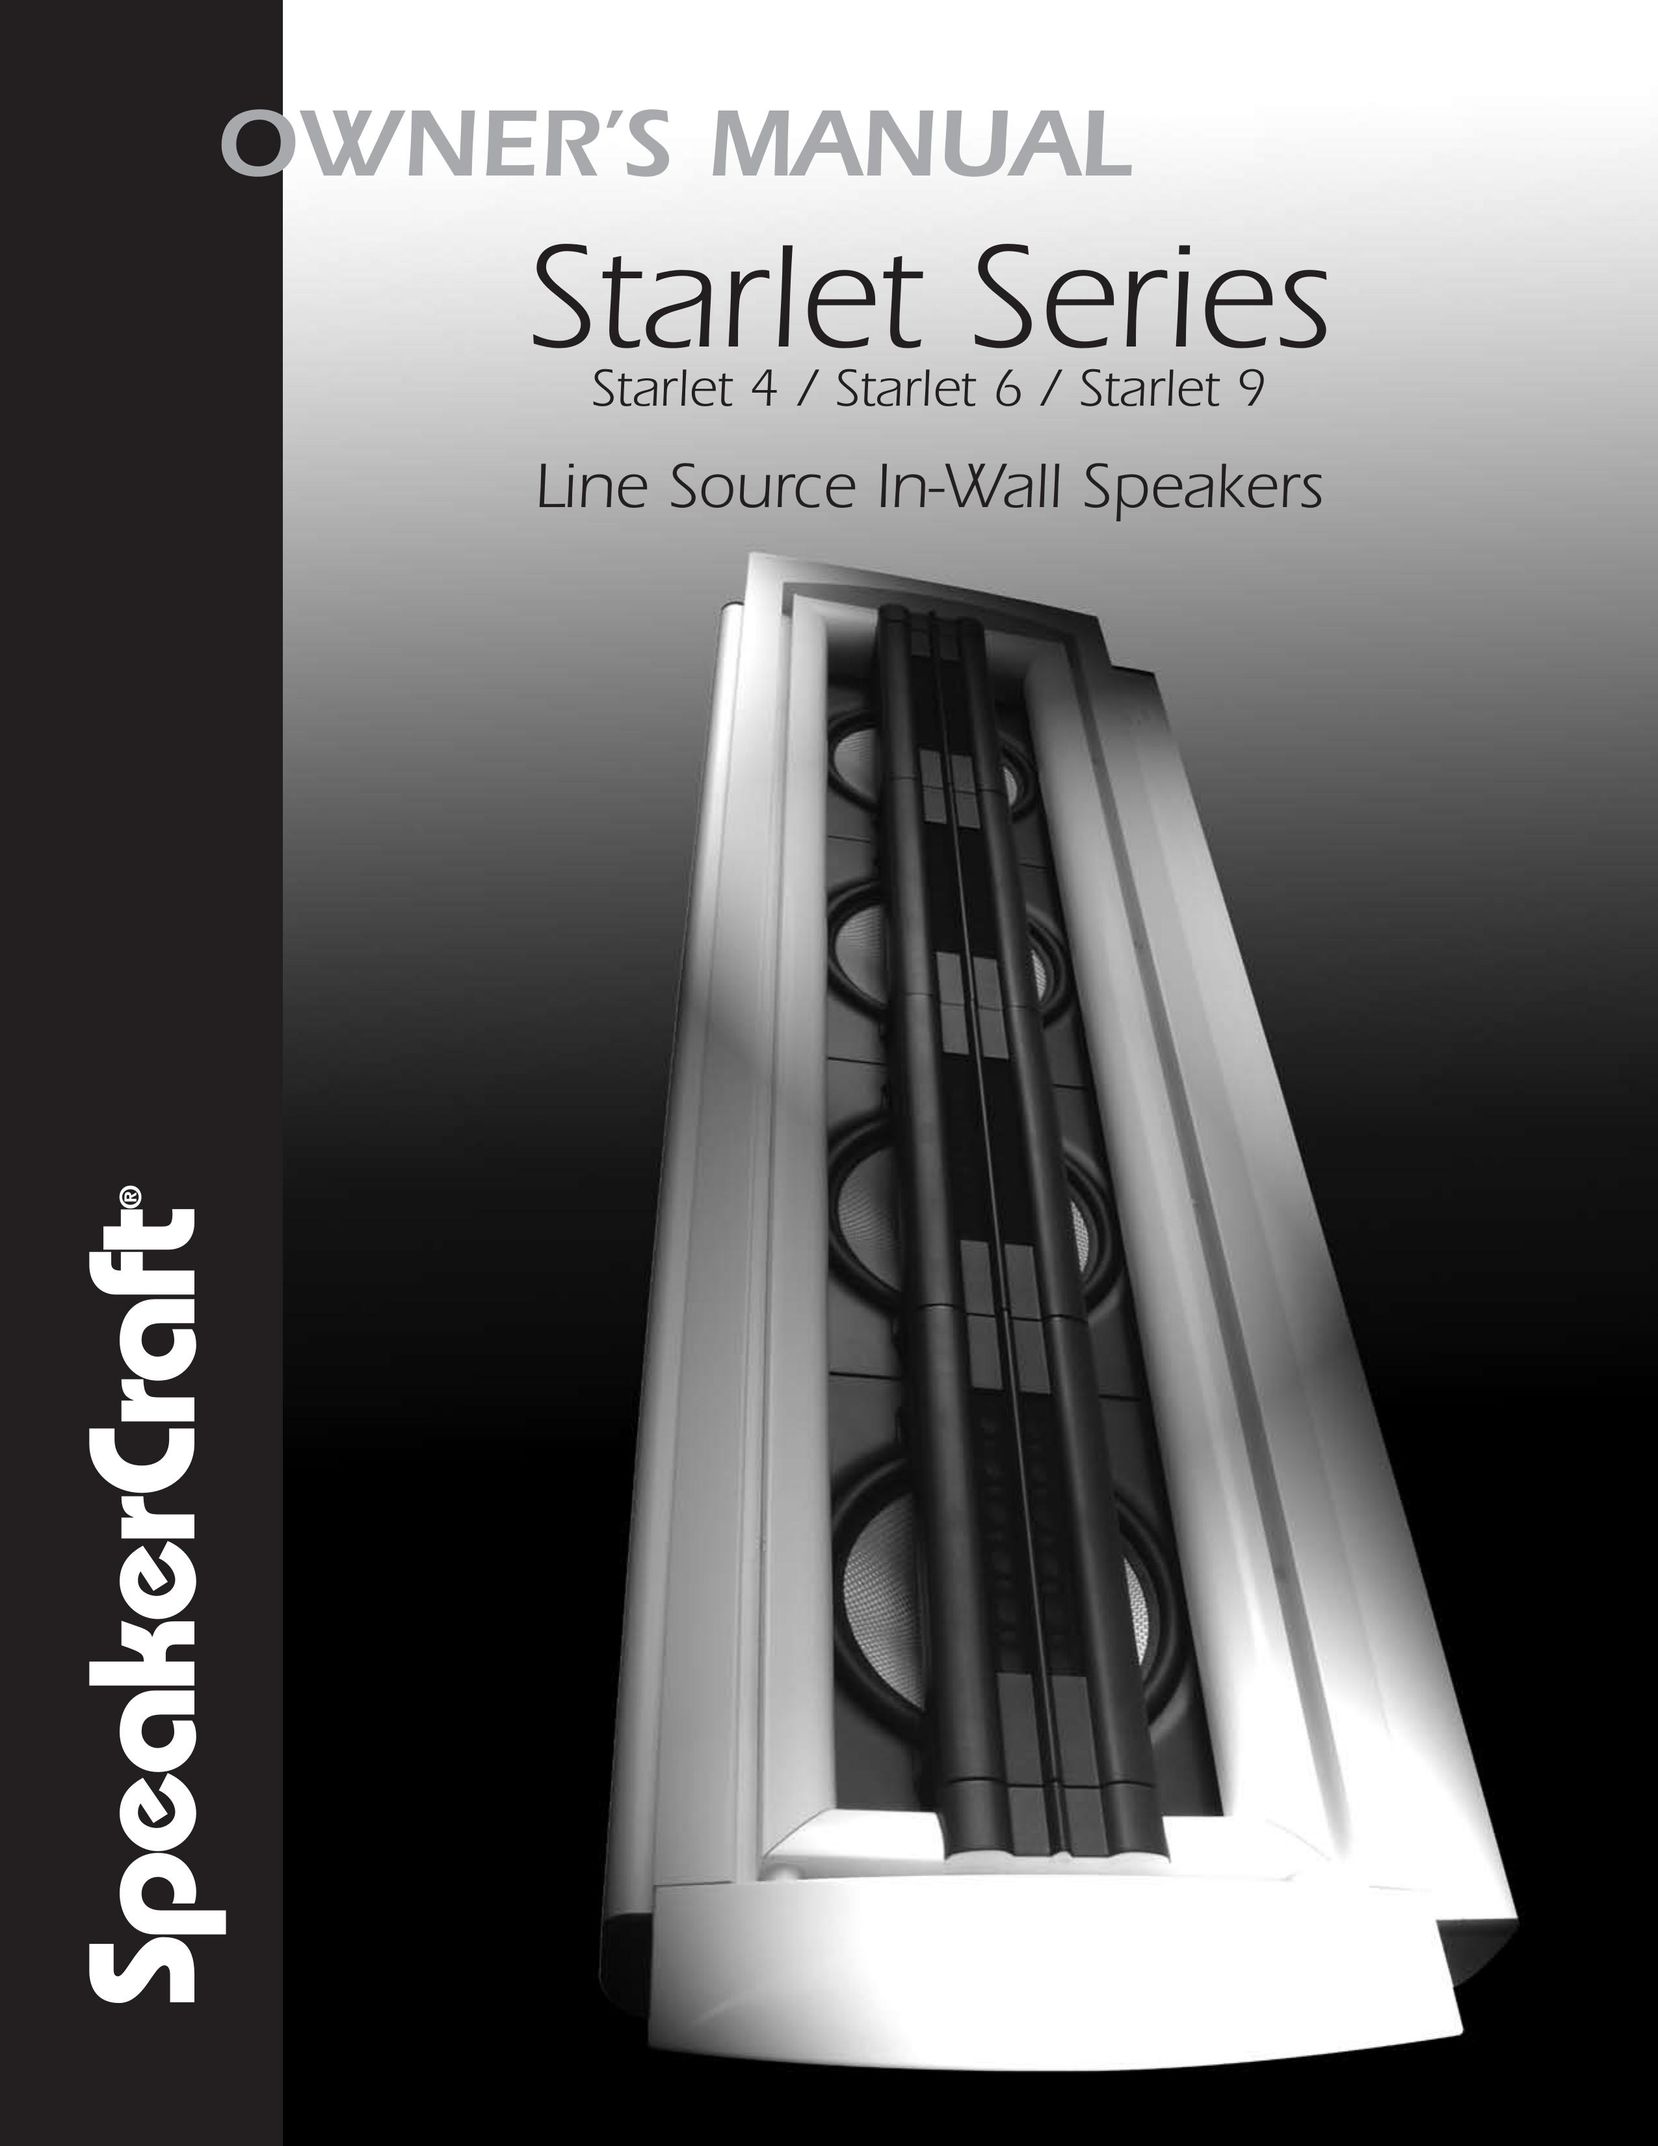 SpeakerCraft Starlet 9 Speaker User Manual